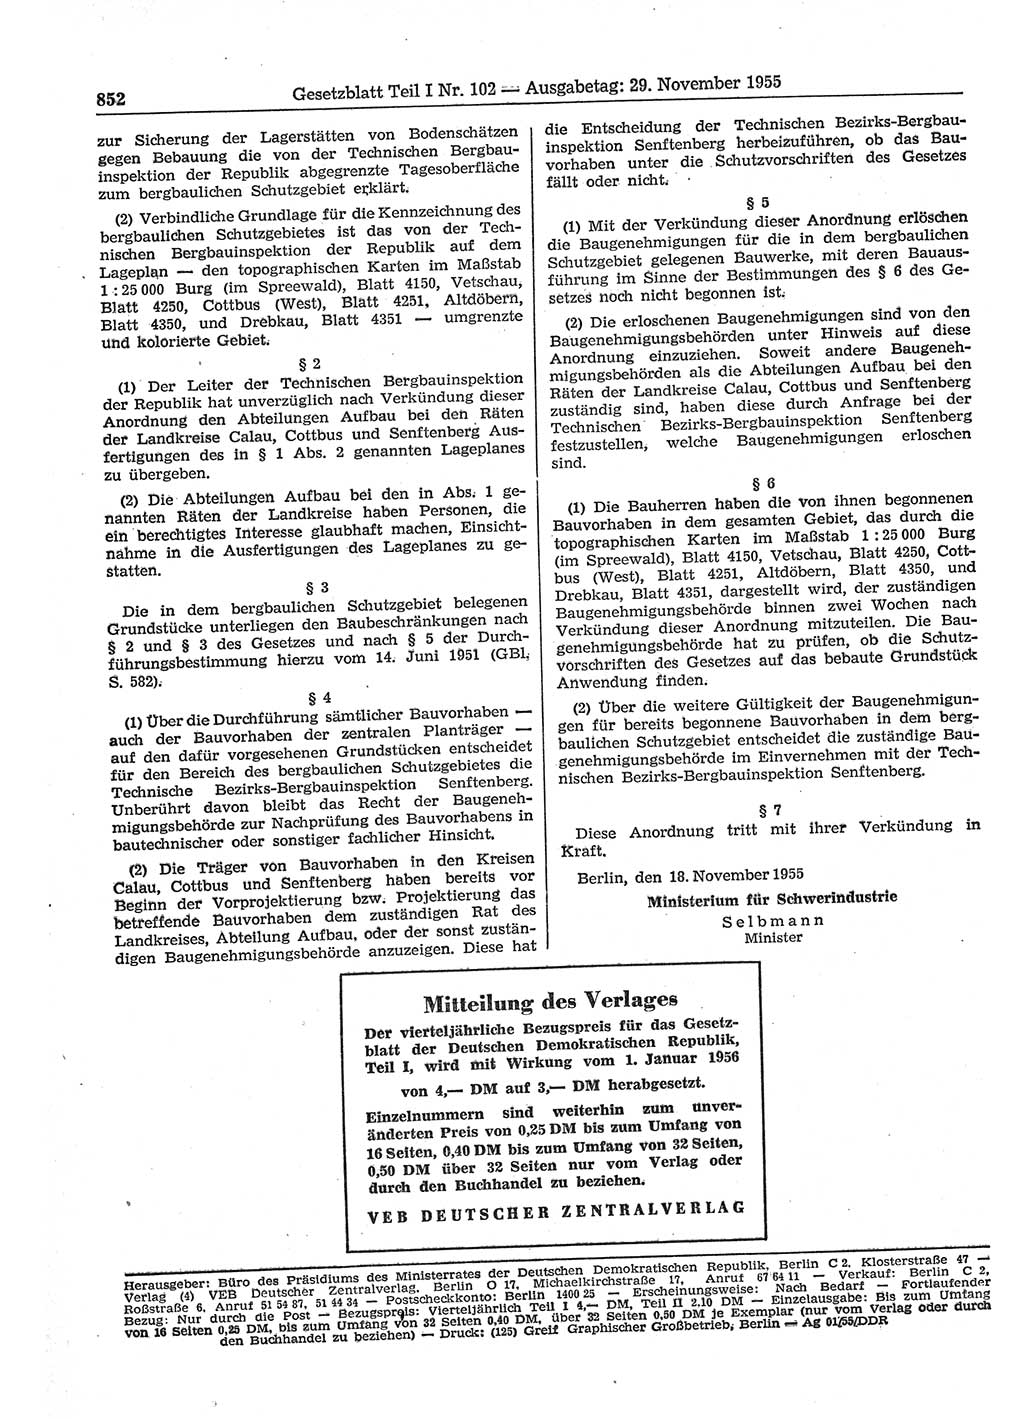 Gesetzblatt (GBl.) der Deutschen Demokratischen Republik (DDR) Teil Ⅰ 1955, Seite 852 (GBl. DDR Ⅰ 1955, S. 852)